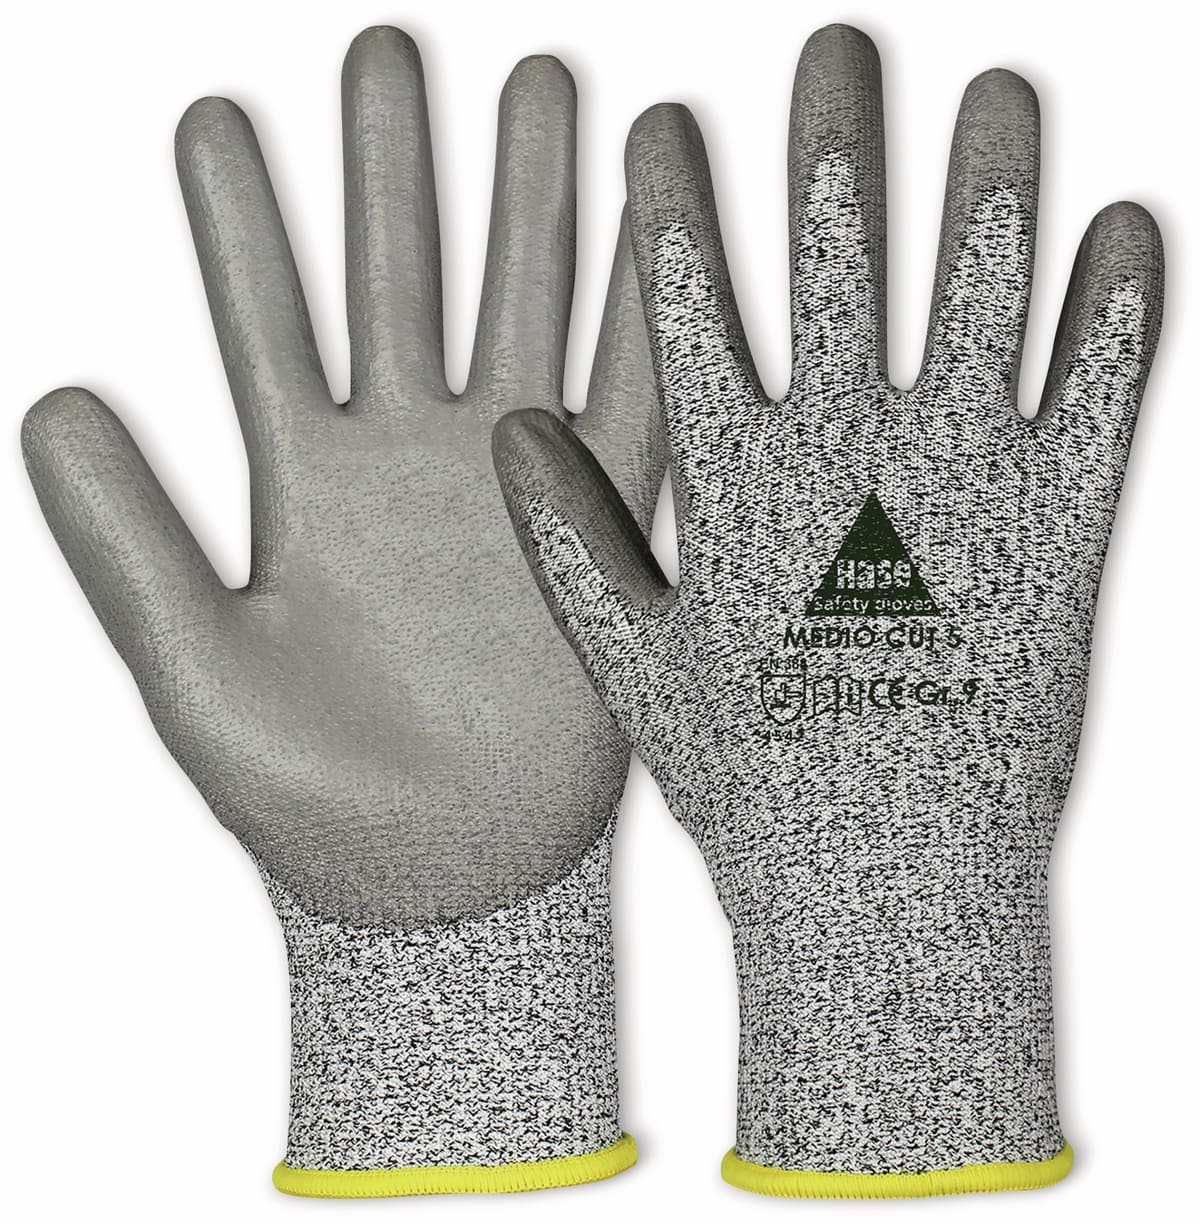 HASE SAFETY GLOVES Schnittschutz-Arbeitshandschuhe Medio Cut 5, EN 388, EN 420, Größe 10 von Hase Safety gloves